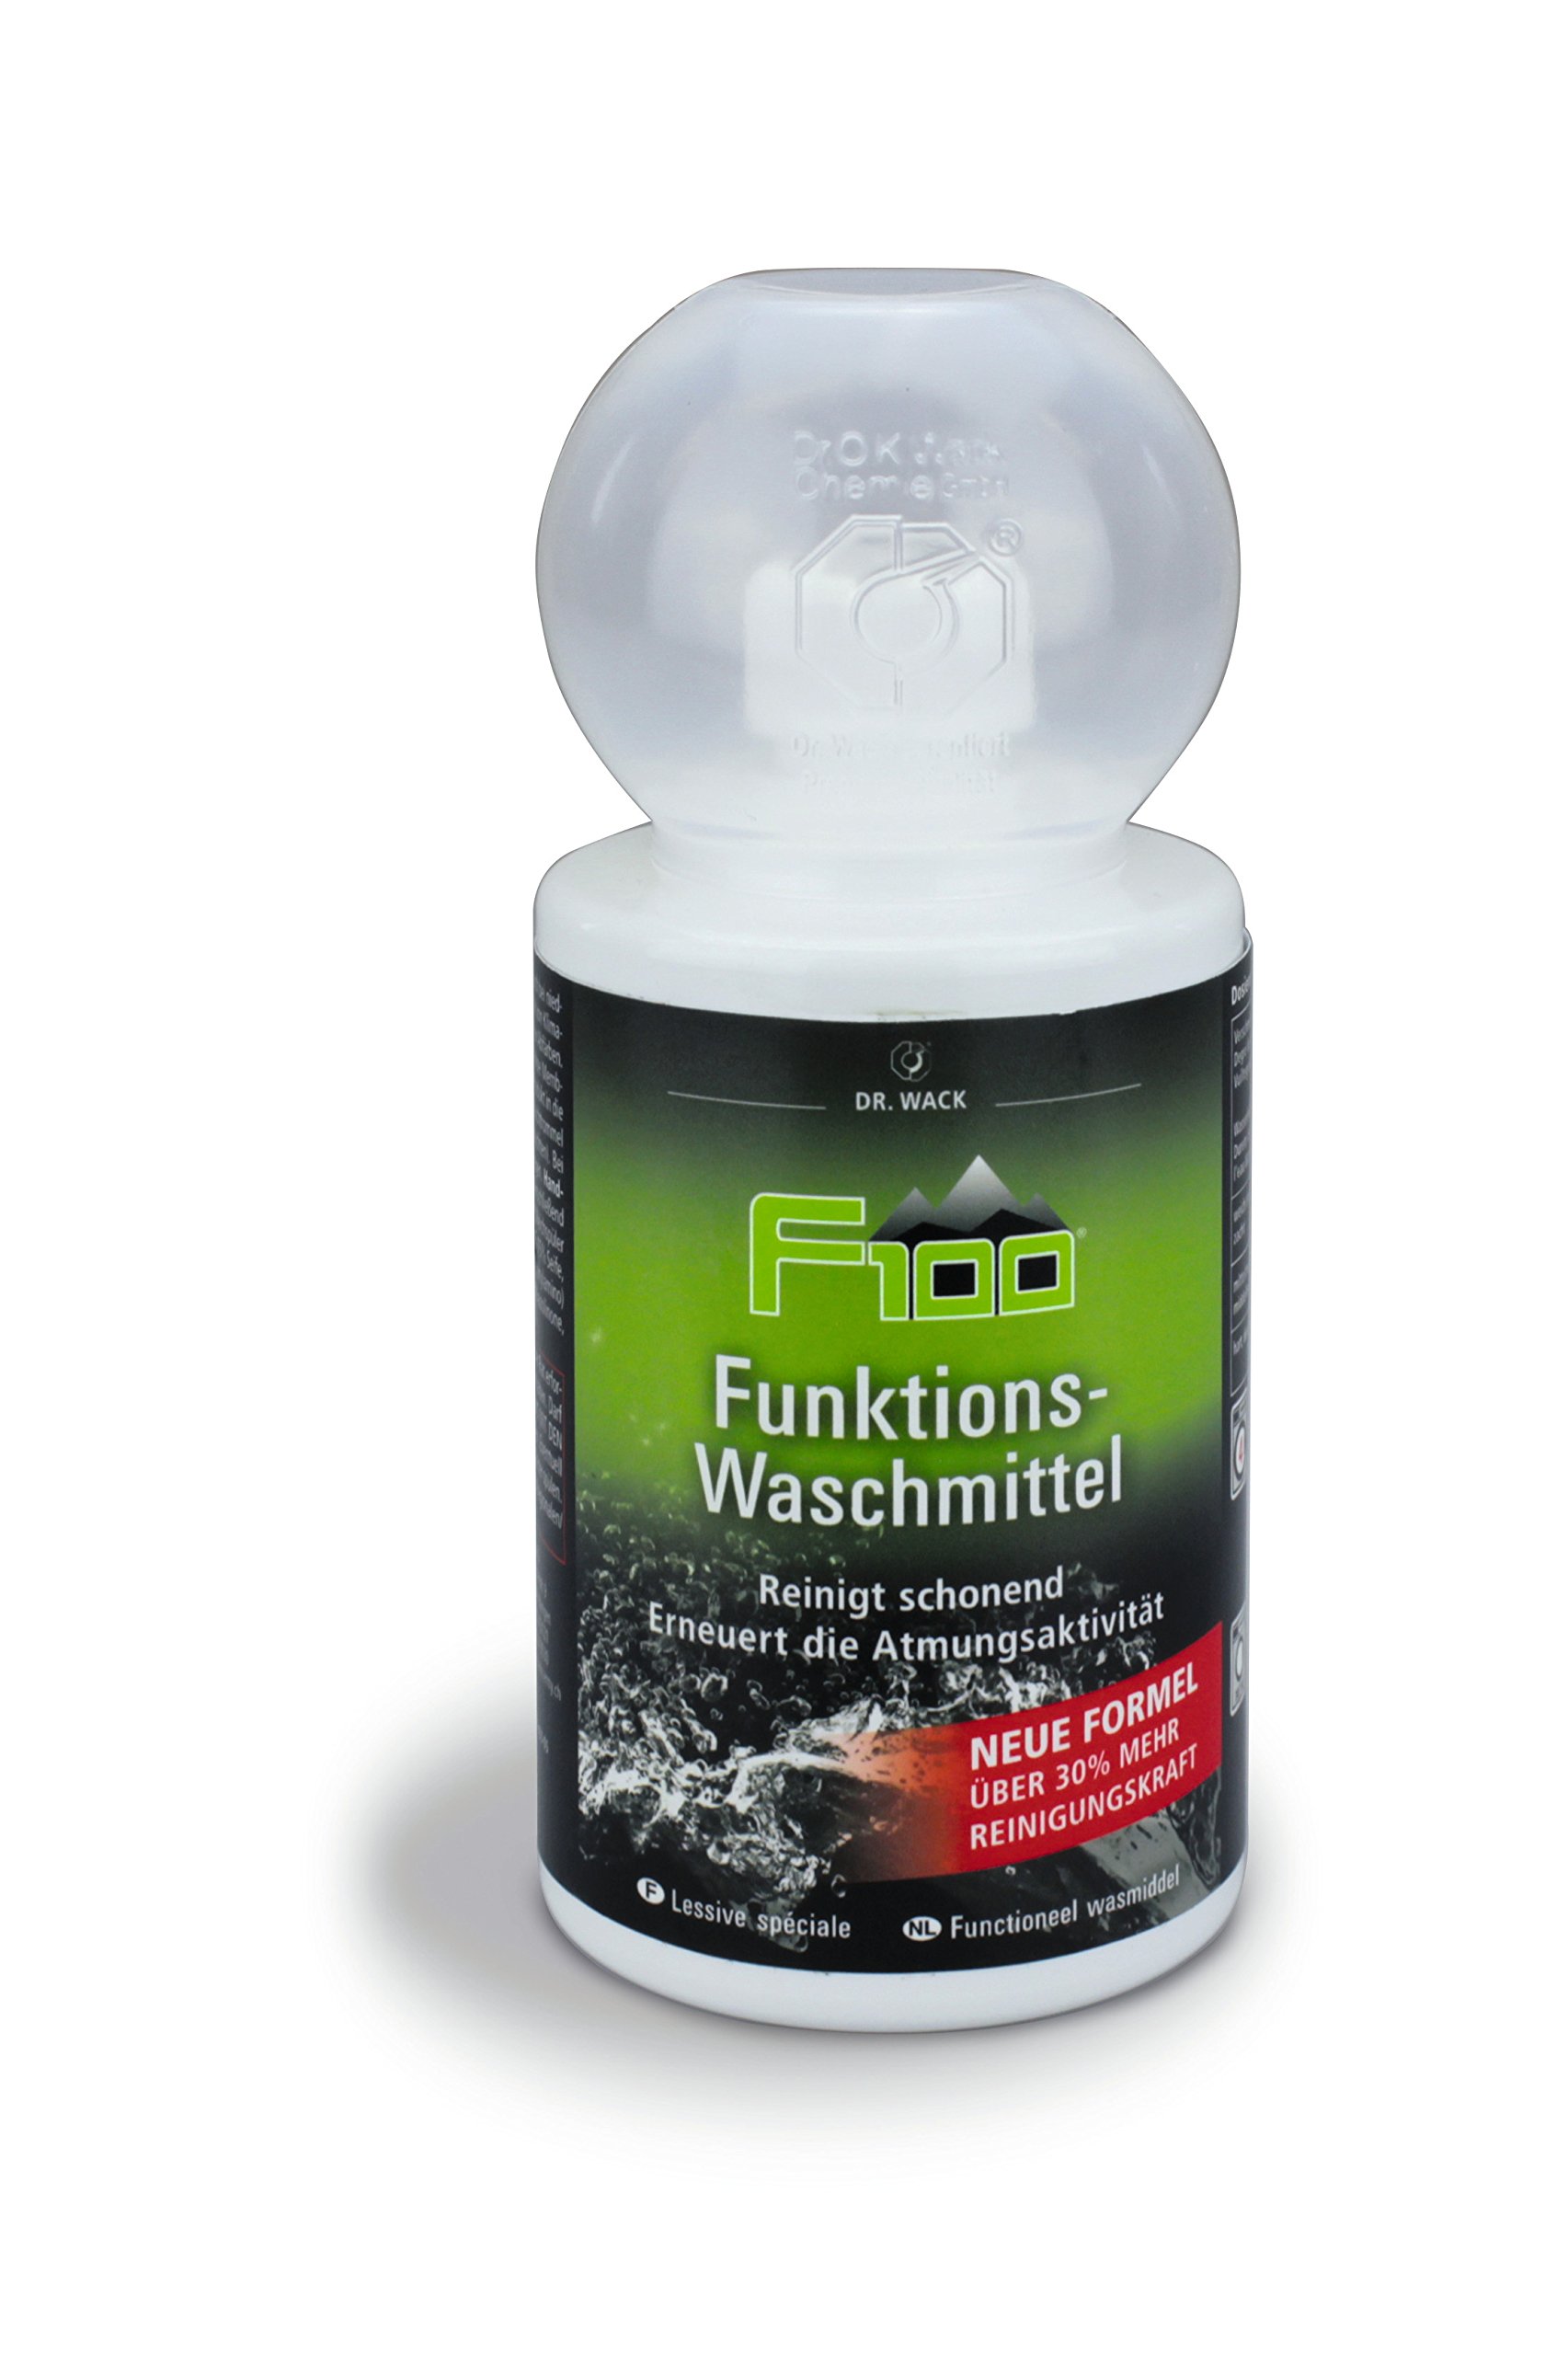 Dr. Wack - F100 Funktions-Waschmittel – NEUE FORMEL 250 ml I Flüssig-Waschmittel für Fahrradbekleidung aIler Art I Hochwertige Fahrradpflege Made in Germany von DR. WACK